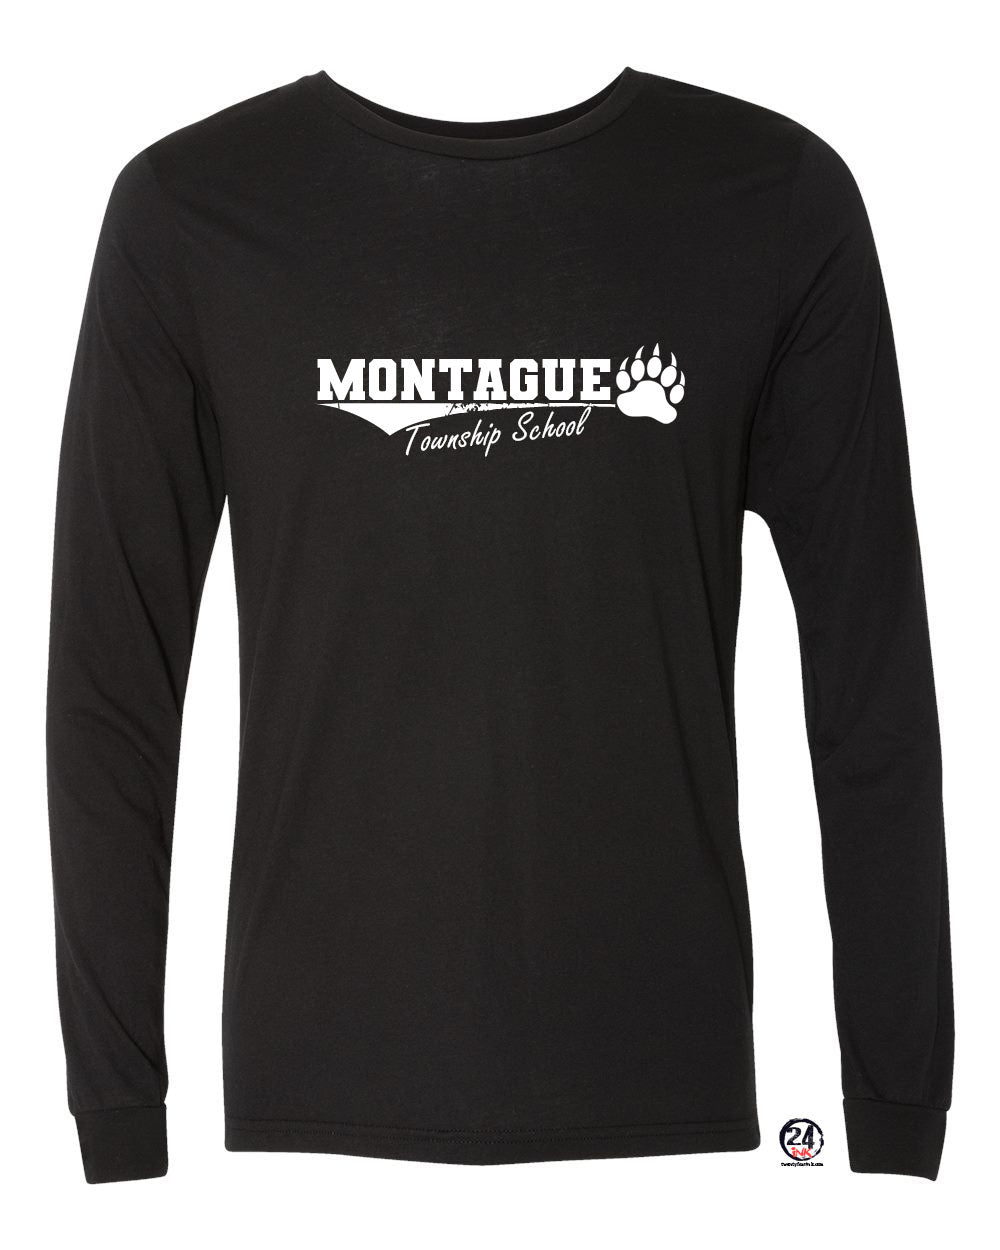 Montague Design 1 Long Sleeve Shirt